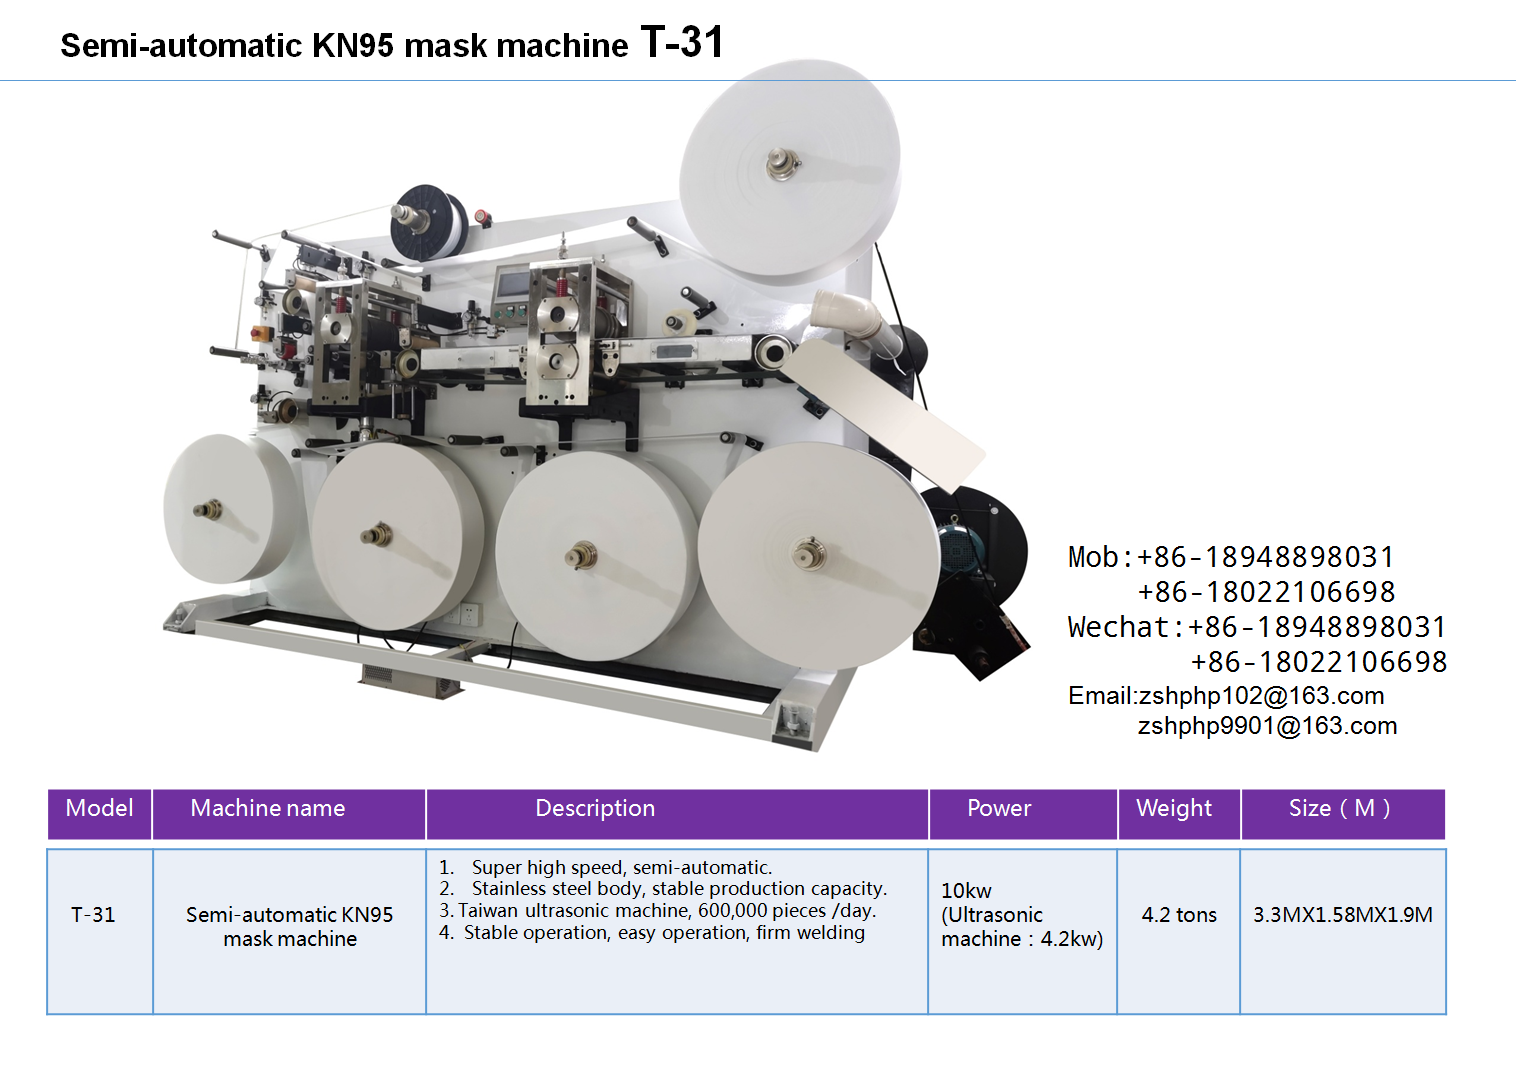 Semi-automatic KN95 mask machine